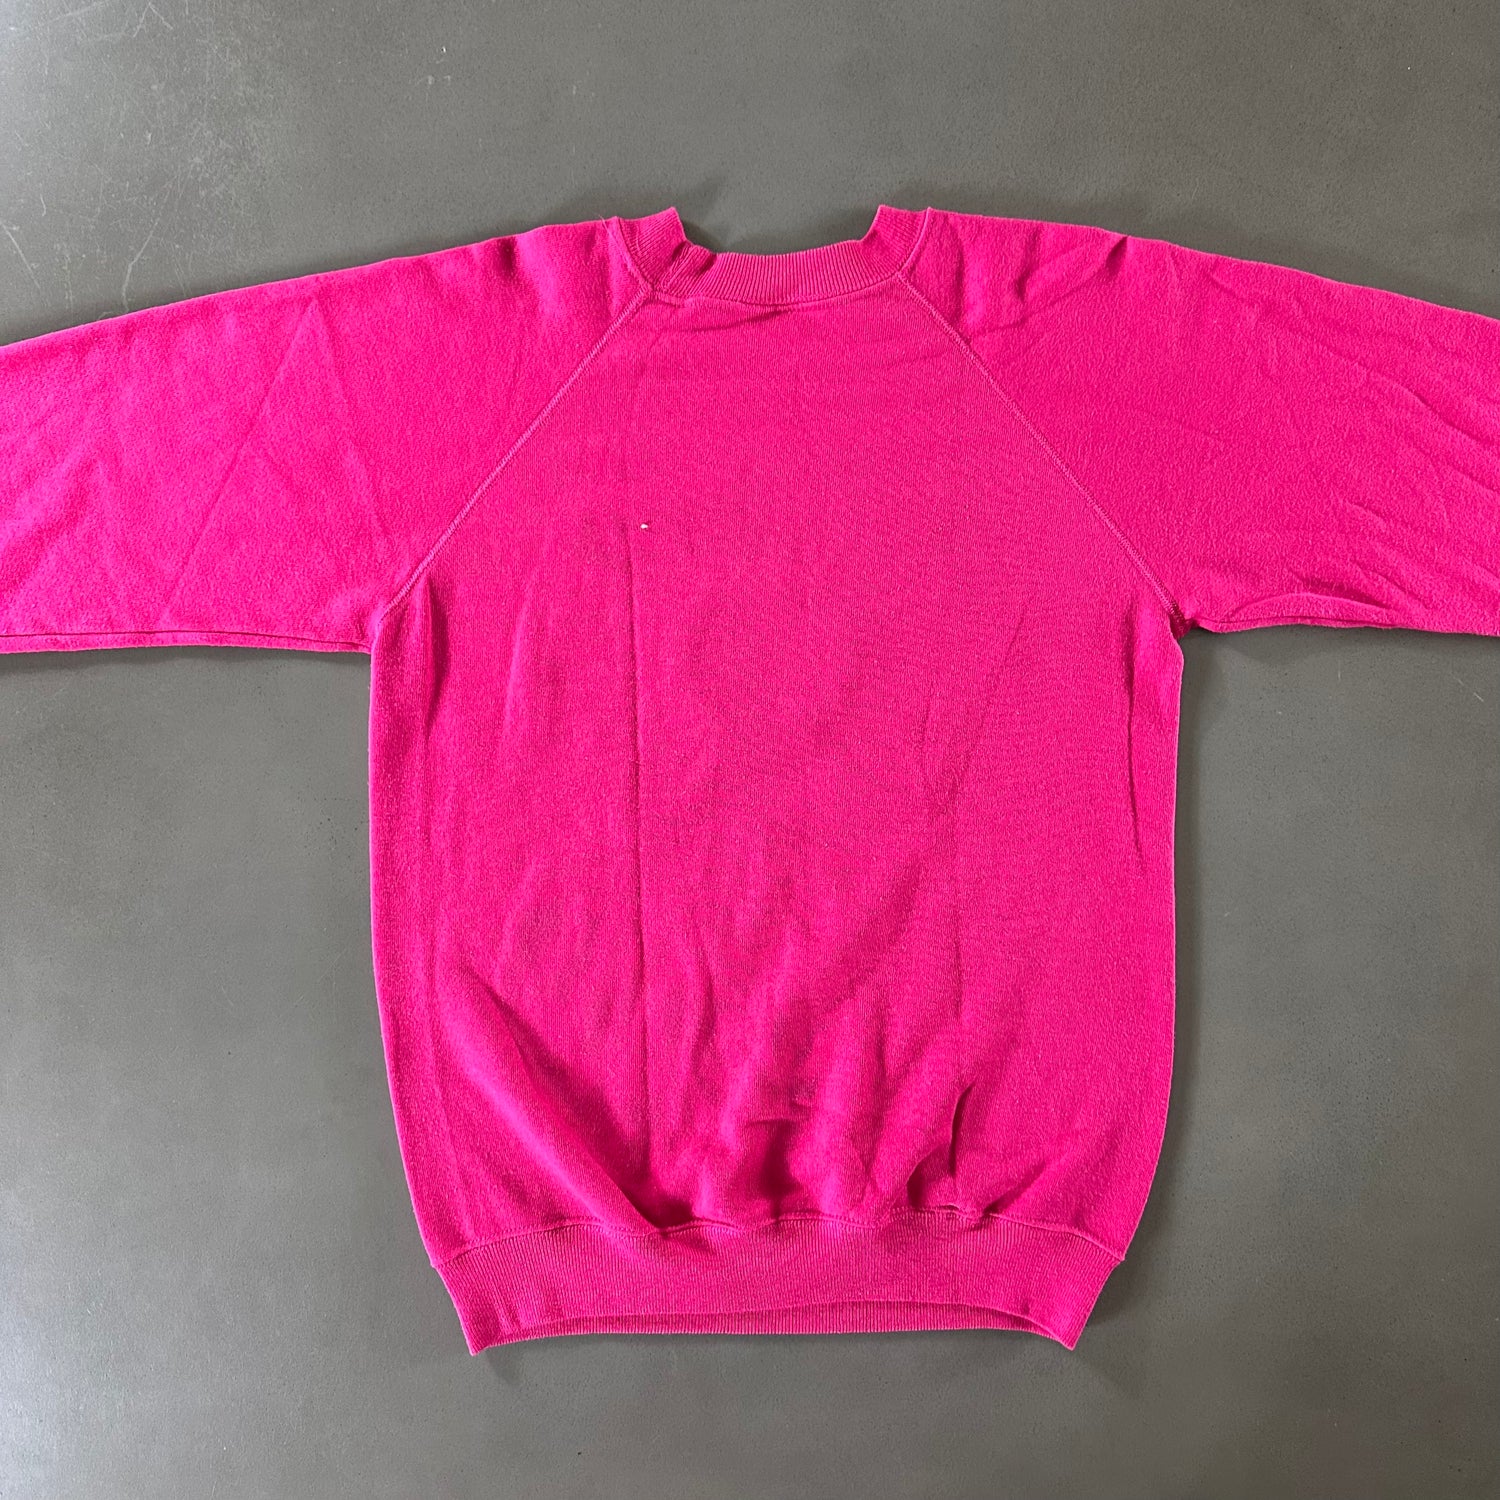 Vintage 1990s Arizona Sweatshirt size Medium